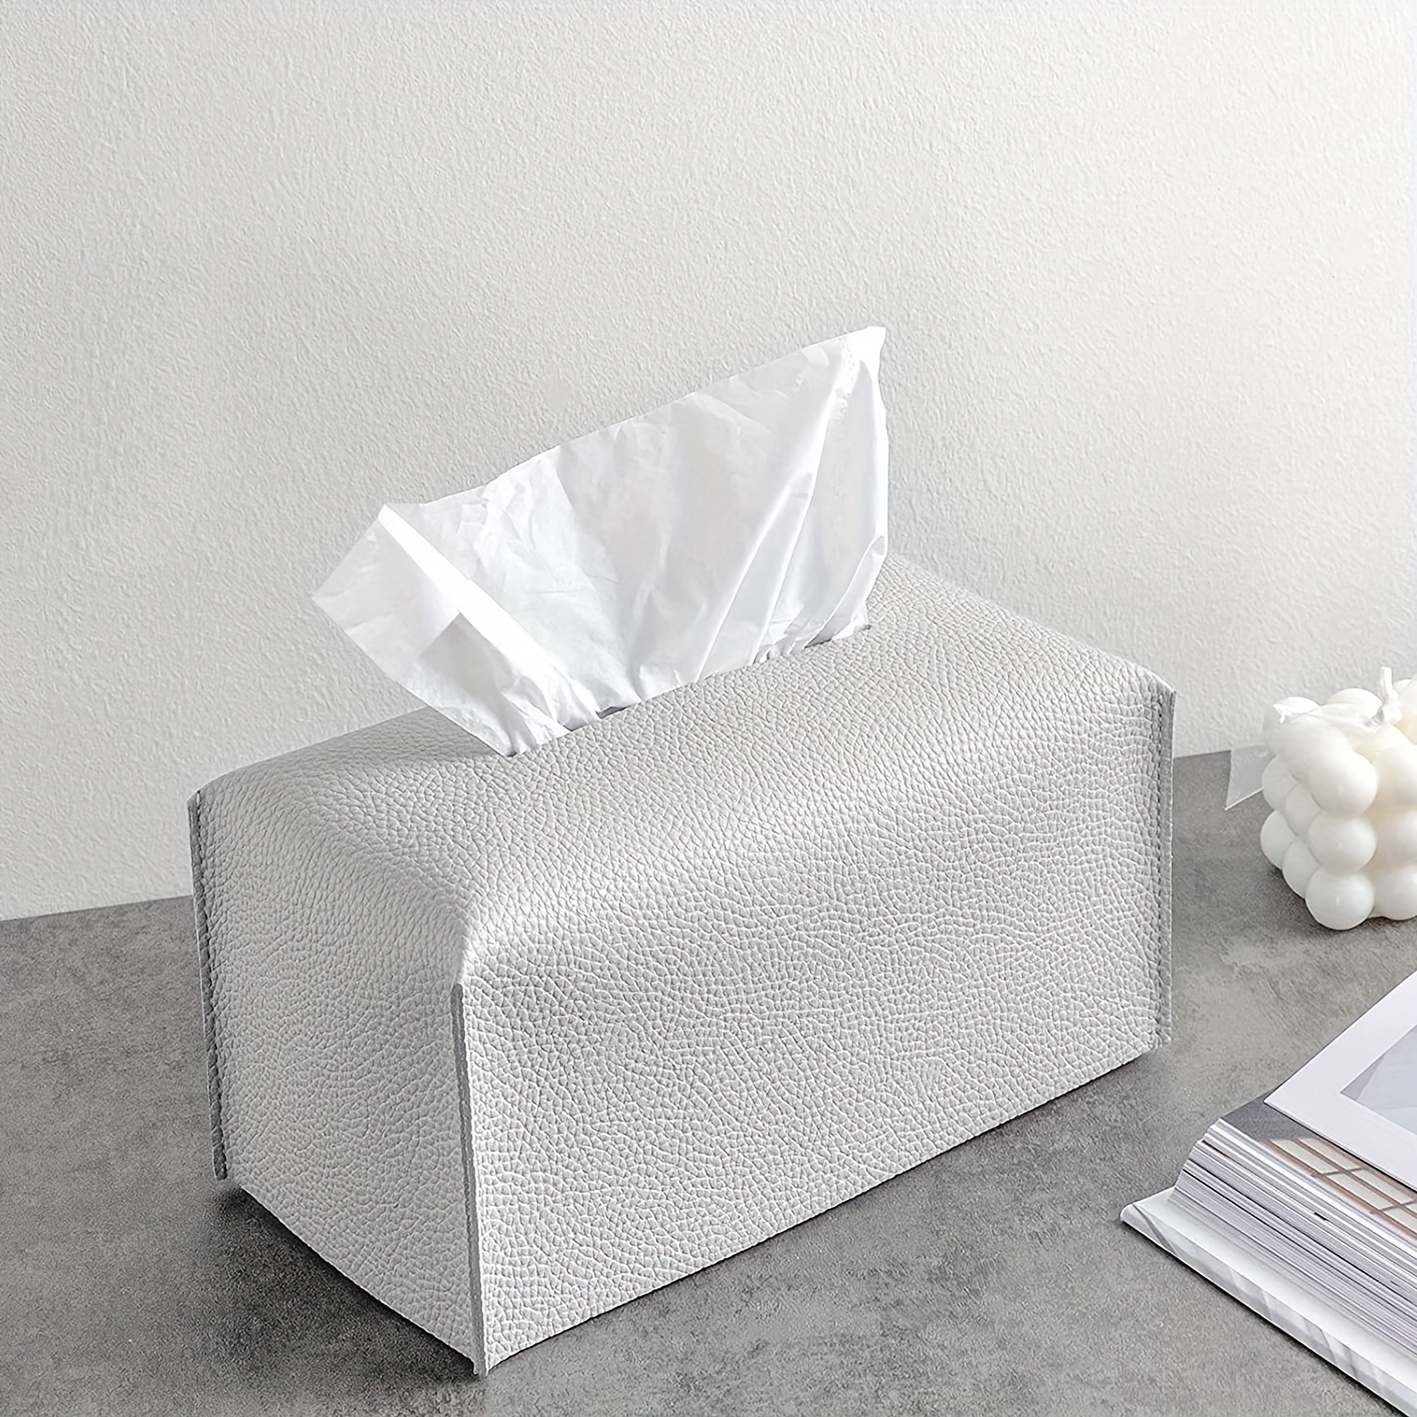 Handmade Jute Tissue Box Cover, Natural Boho Tissue Box for Table